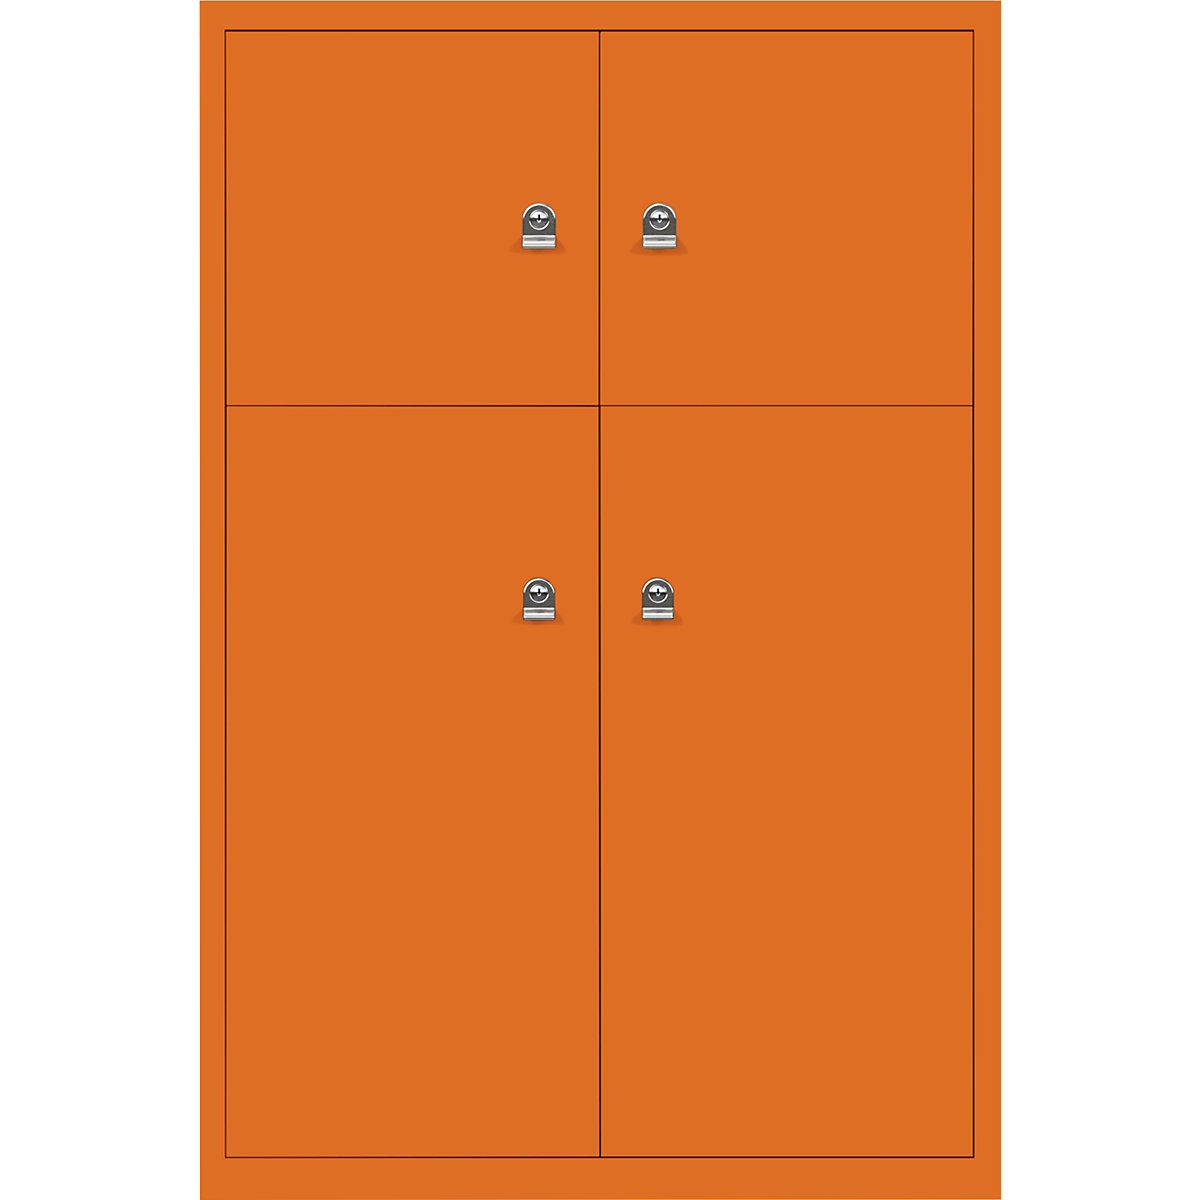 Omara s predelki z zaklepanjem LateralFile™ – BISLEY, 4 predelki z zaklepanjem, višina 2 x 375 mm, 2 x 755 mm, oranžne barve-20